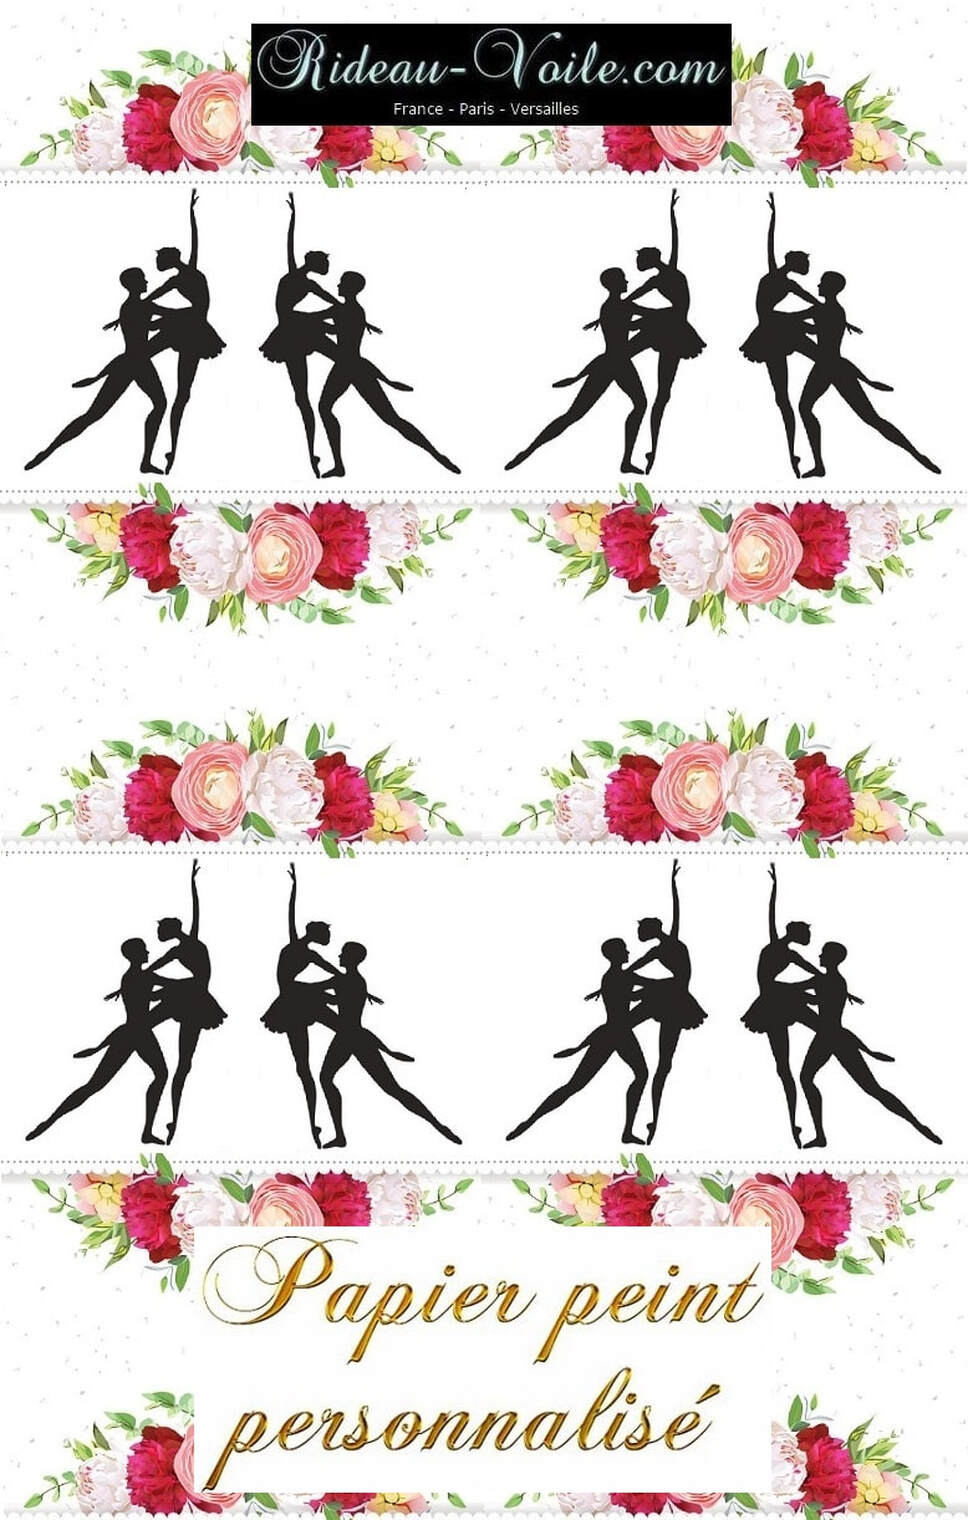 Photopointe satin rose brillant tissu danseuse danseur motif textile couette rideau coussin fleur fleuris floral bouquet vallerine clasique danse